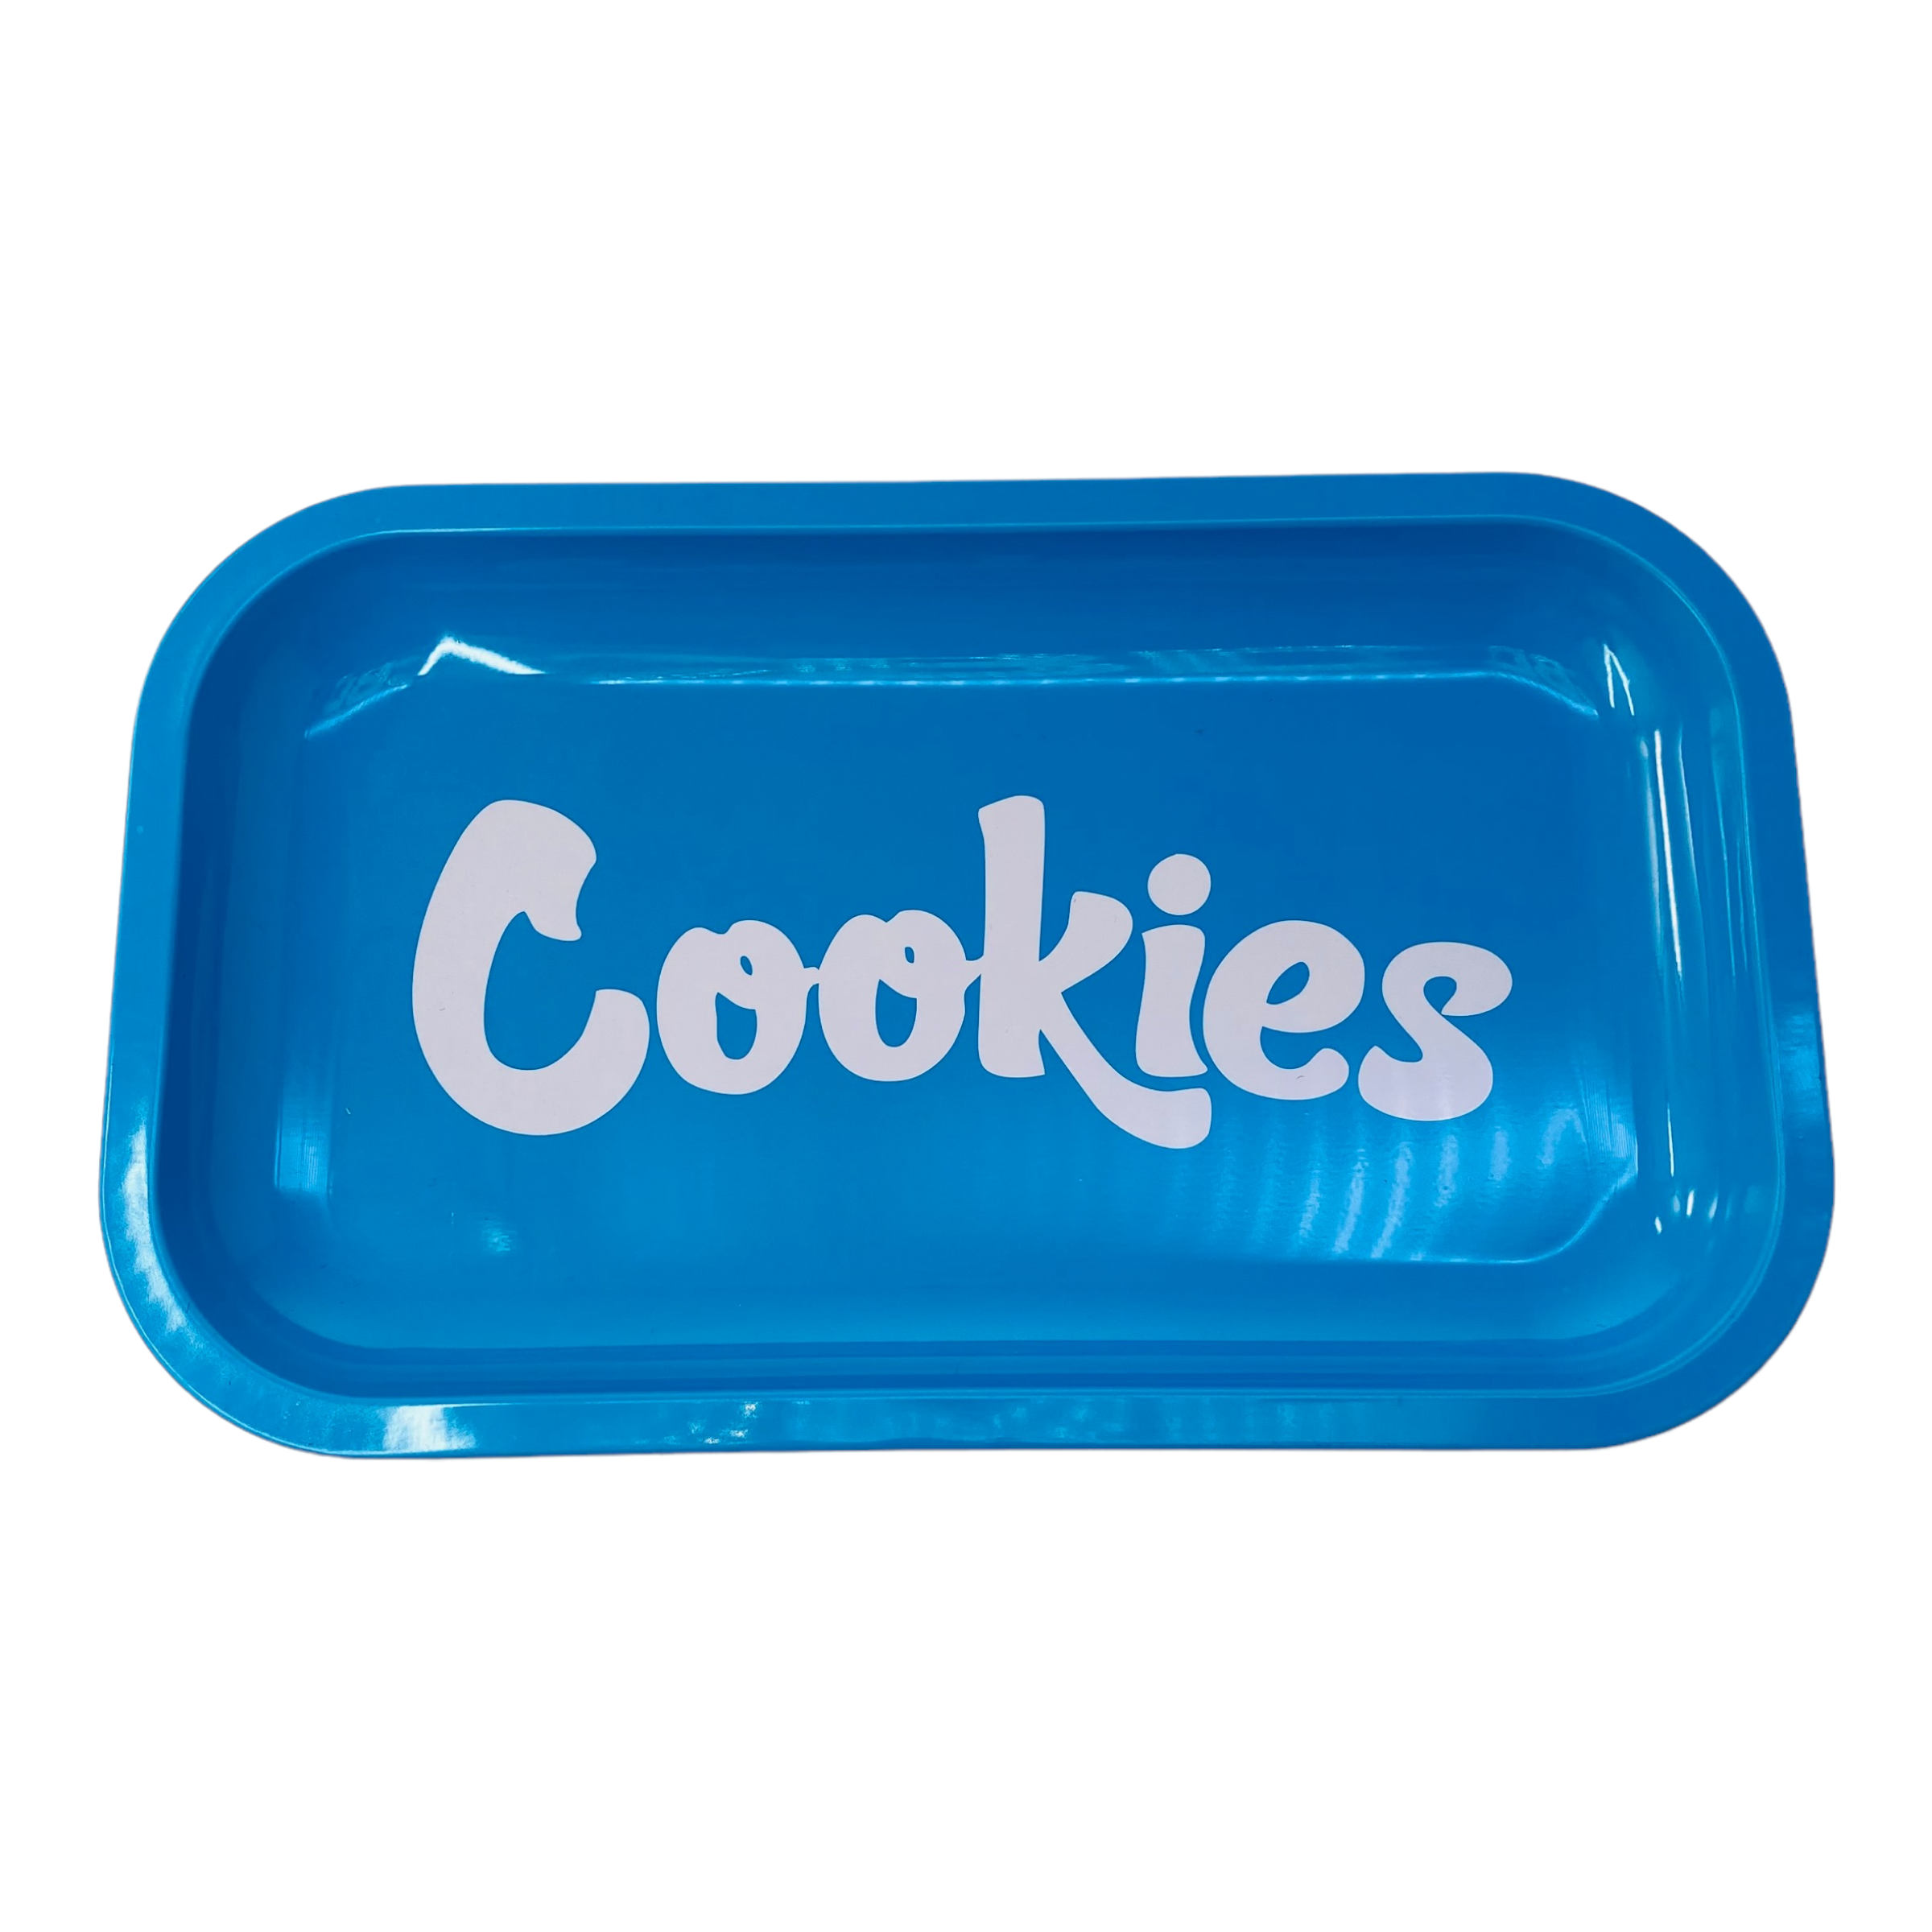 Cookies Blue Metal Rolling Tray Medium